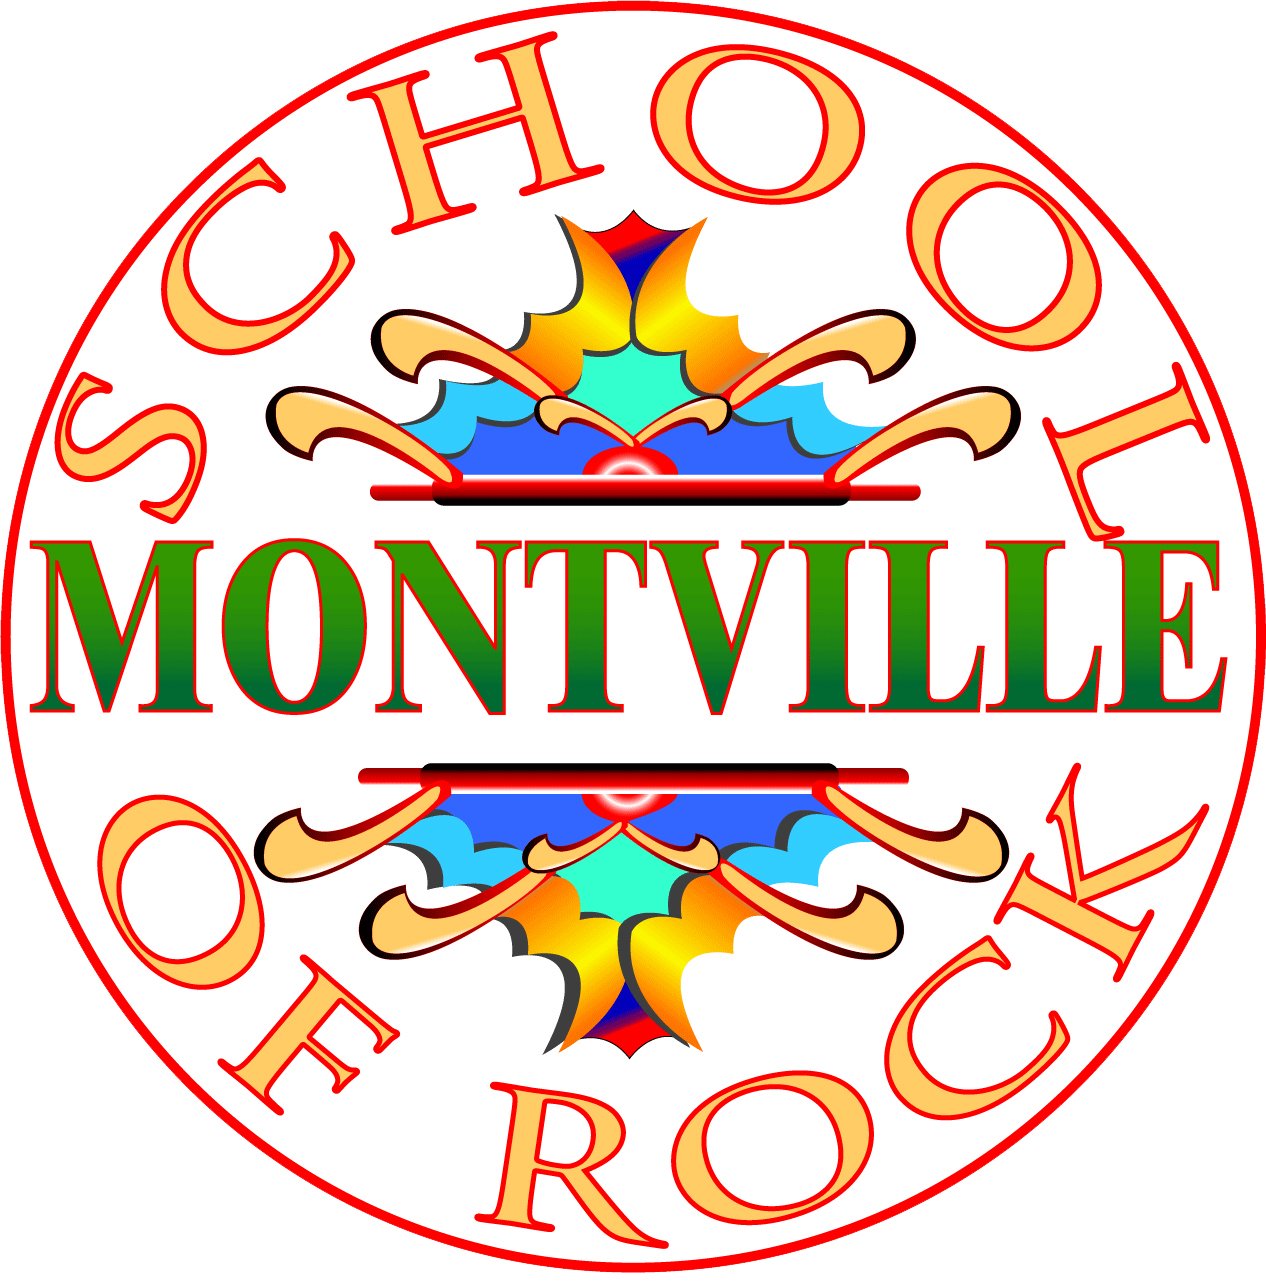 Montville School of Rock